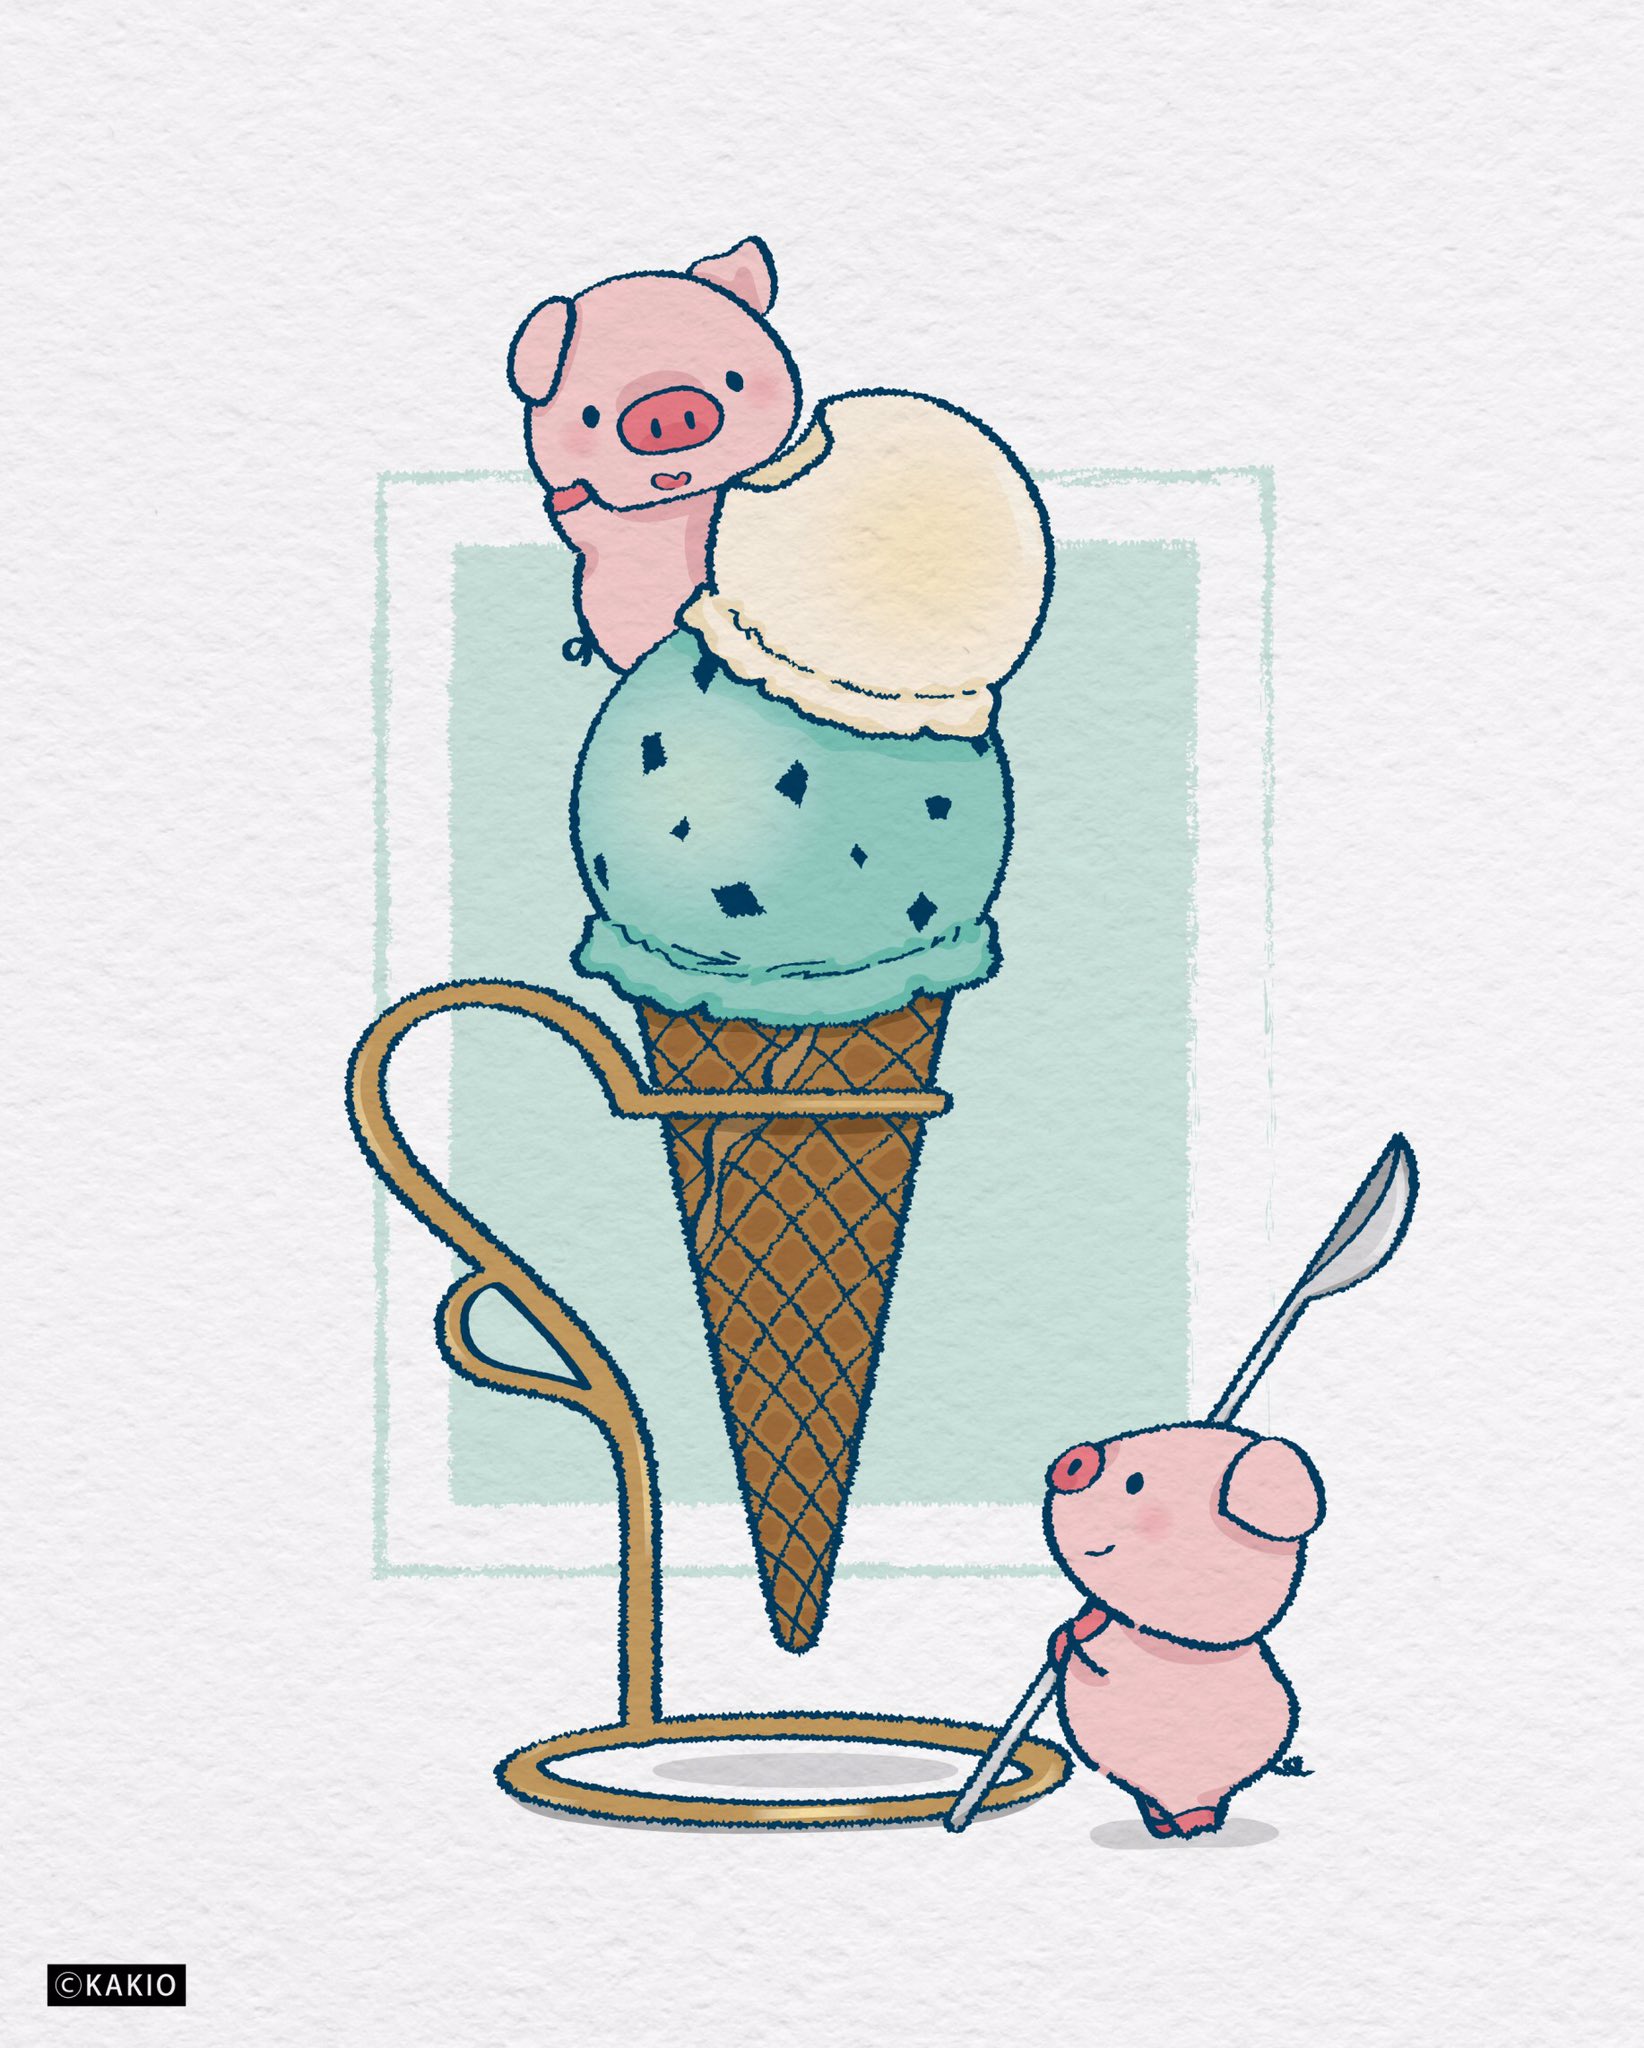 تويتر かきお Suzuriで販売中 على تويتر アイスが食べたくなる季節 イラスト イラスト好きな人と繋がりたい 絵描きさんと繋がりたい かわいいイラスト ゆるいイラスト 絵描き 落書き デザイン アイスクリーム アイス デザート スイーツ スウィーツ